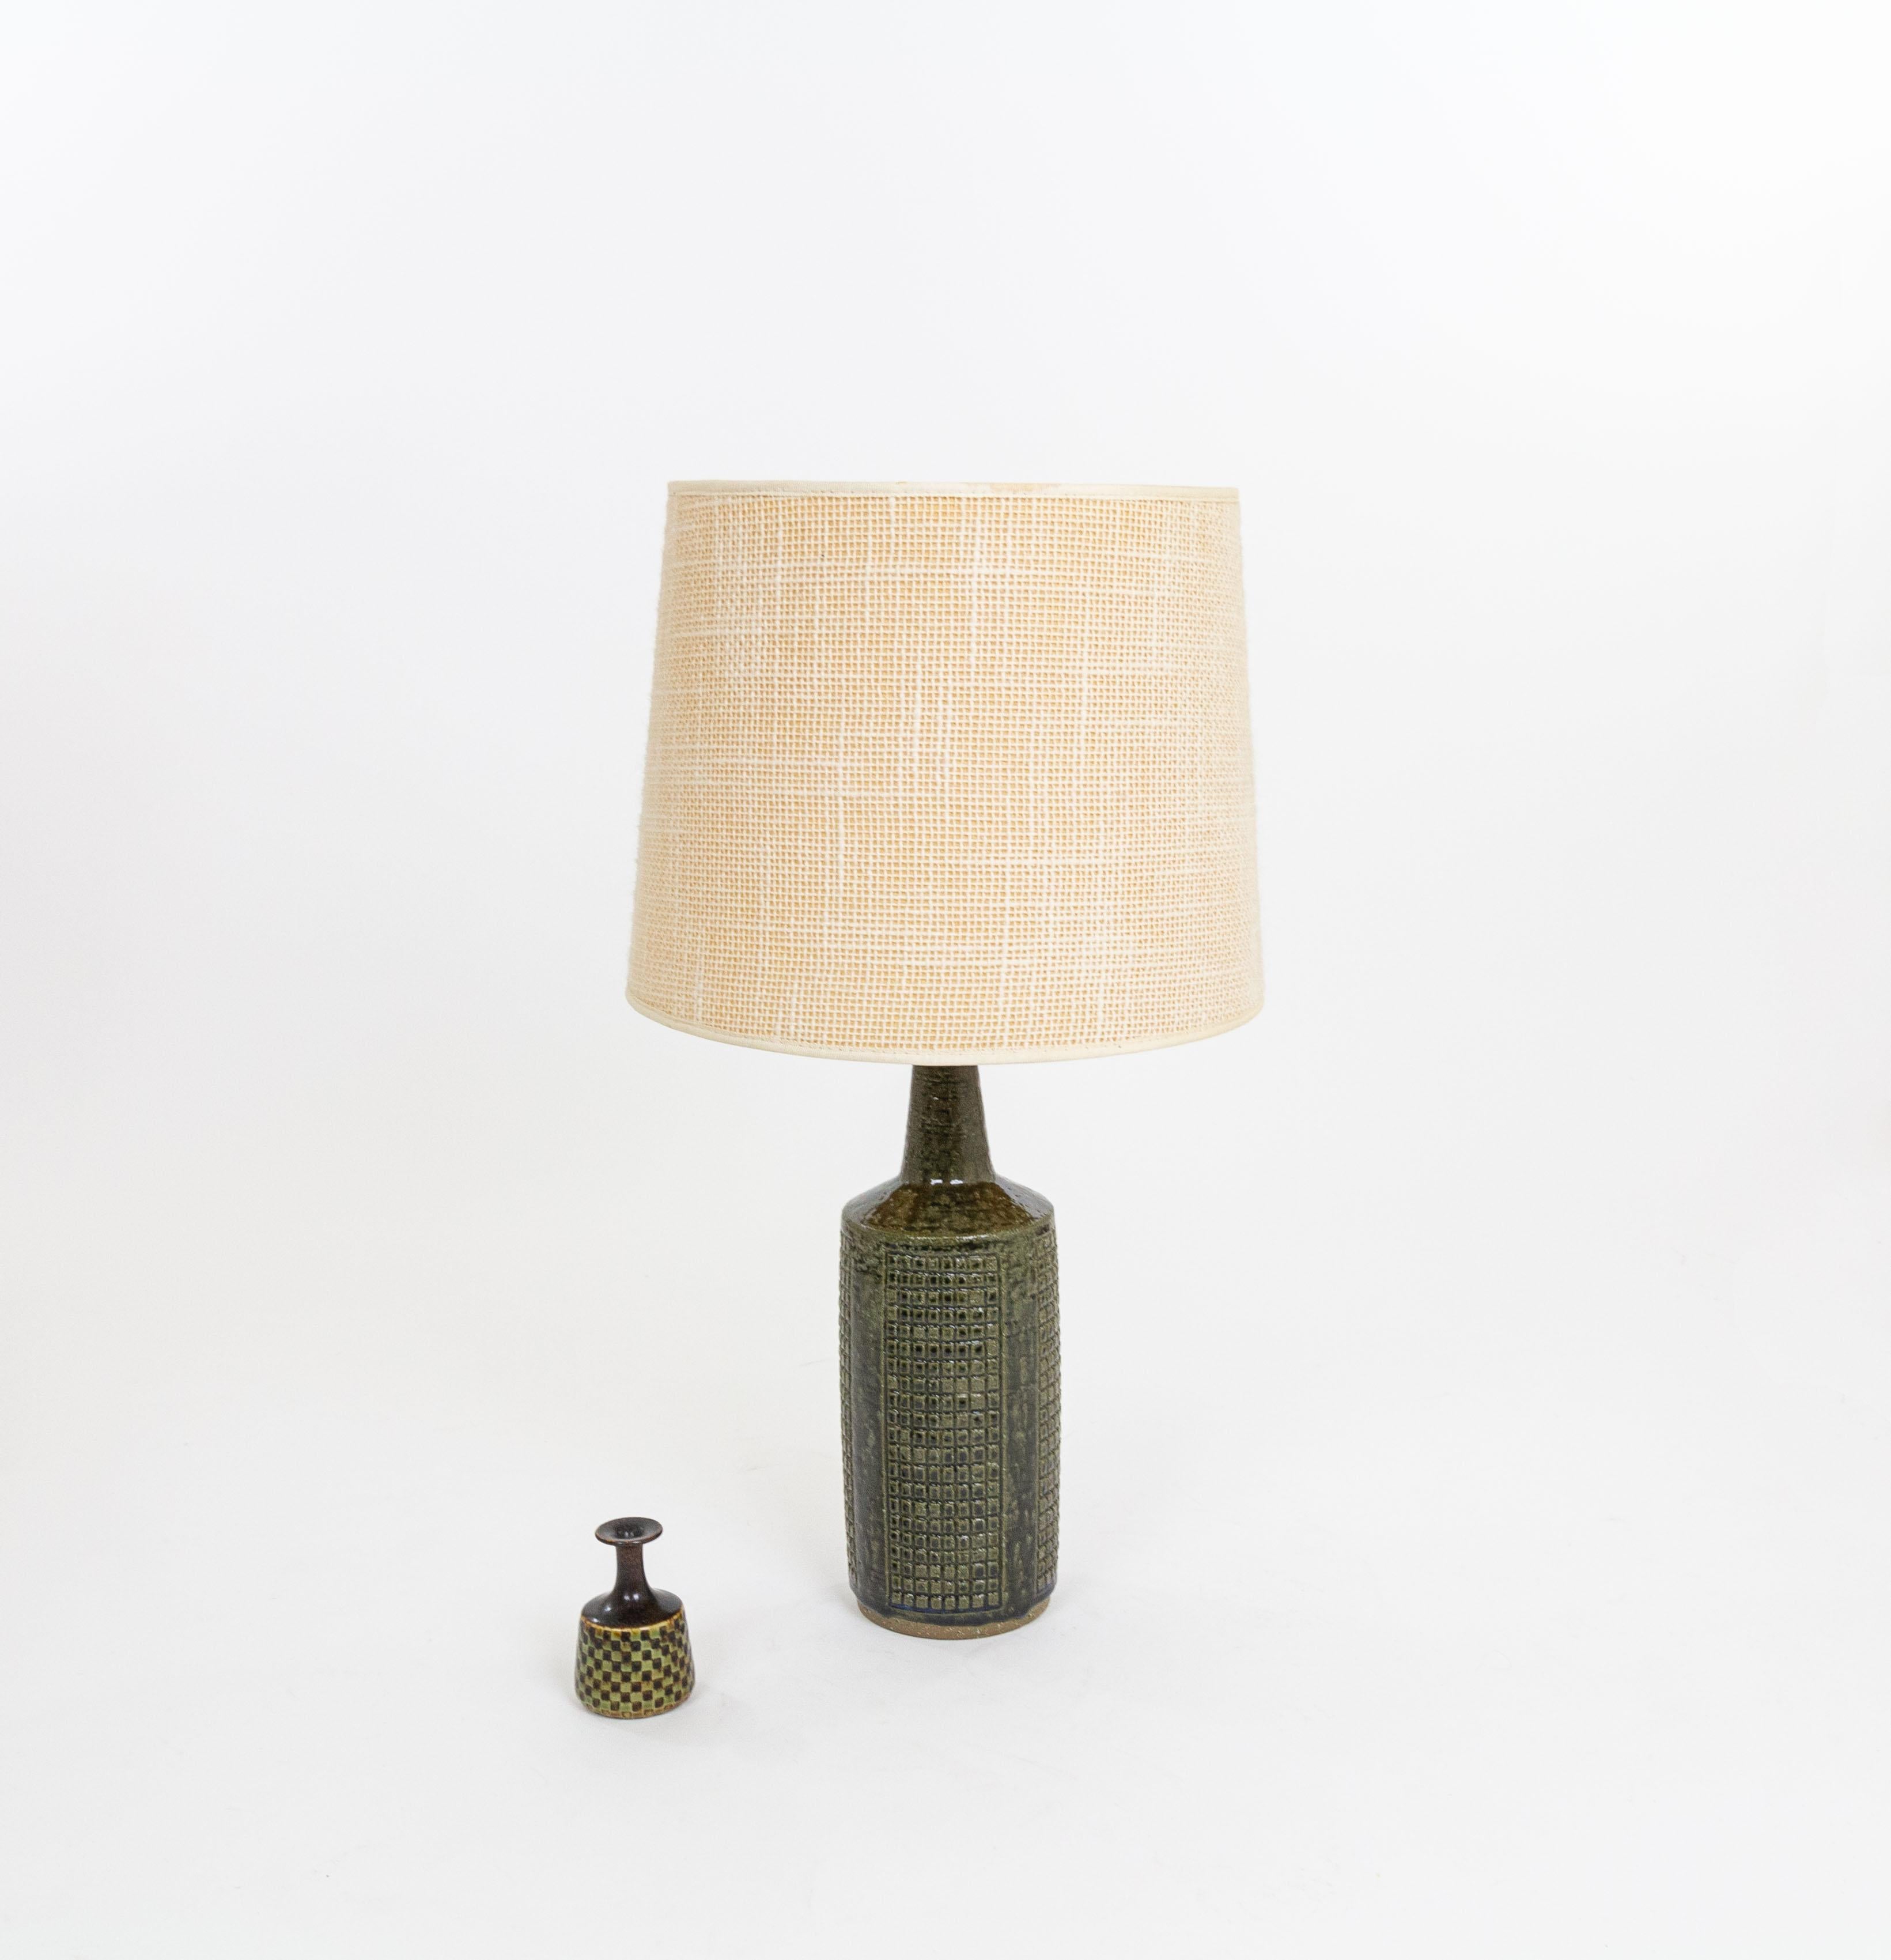 Glazed Army Green DL/30 table lamp by Linnemann-Schmidt for Palshus, 1960s For Sale